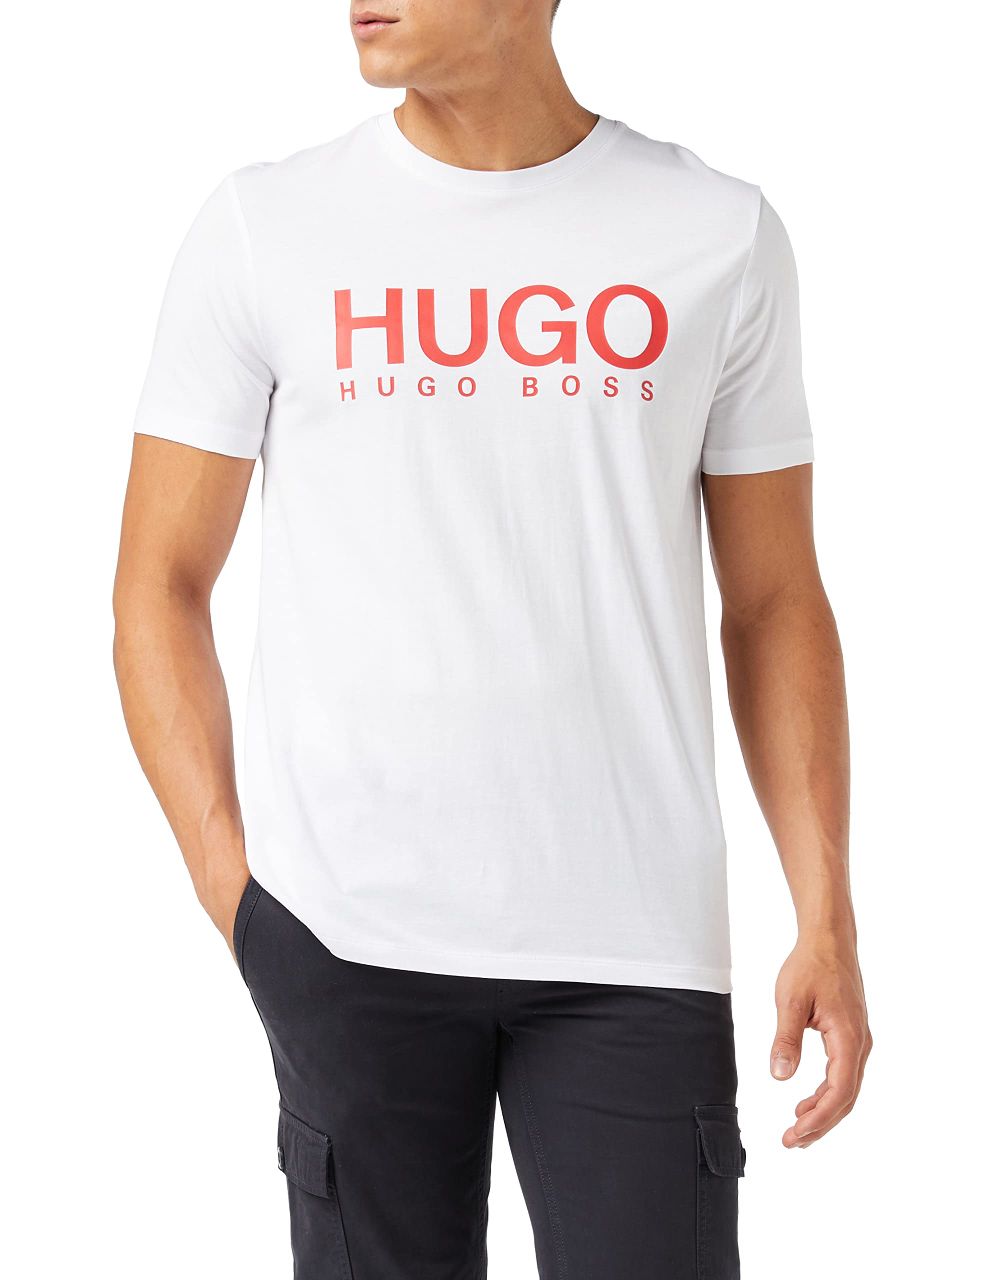 Hugo Boss HUGO Men's Dulivio 10229761 01 T-Shirt - Compare prices